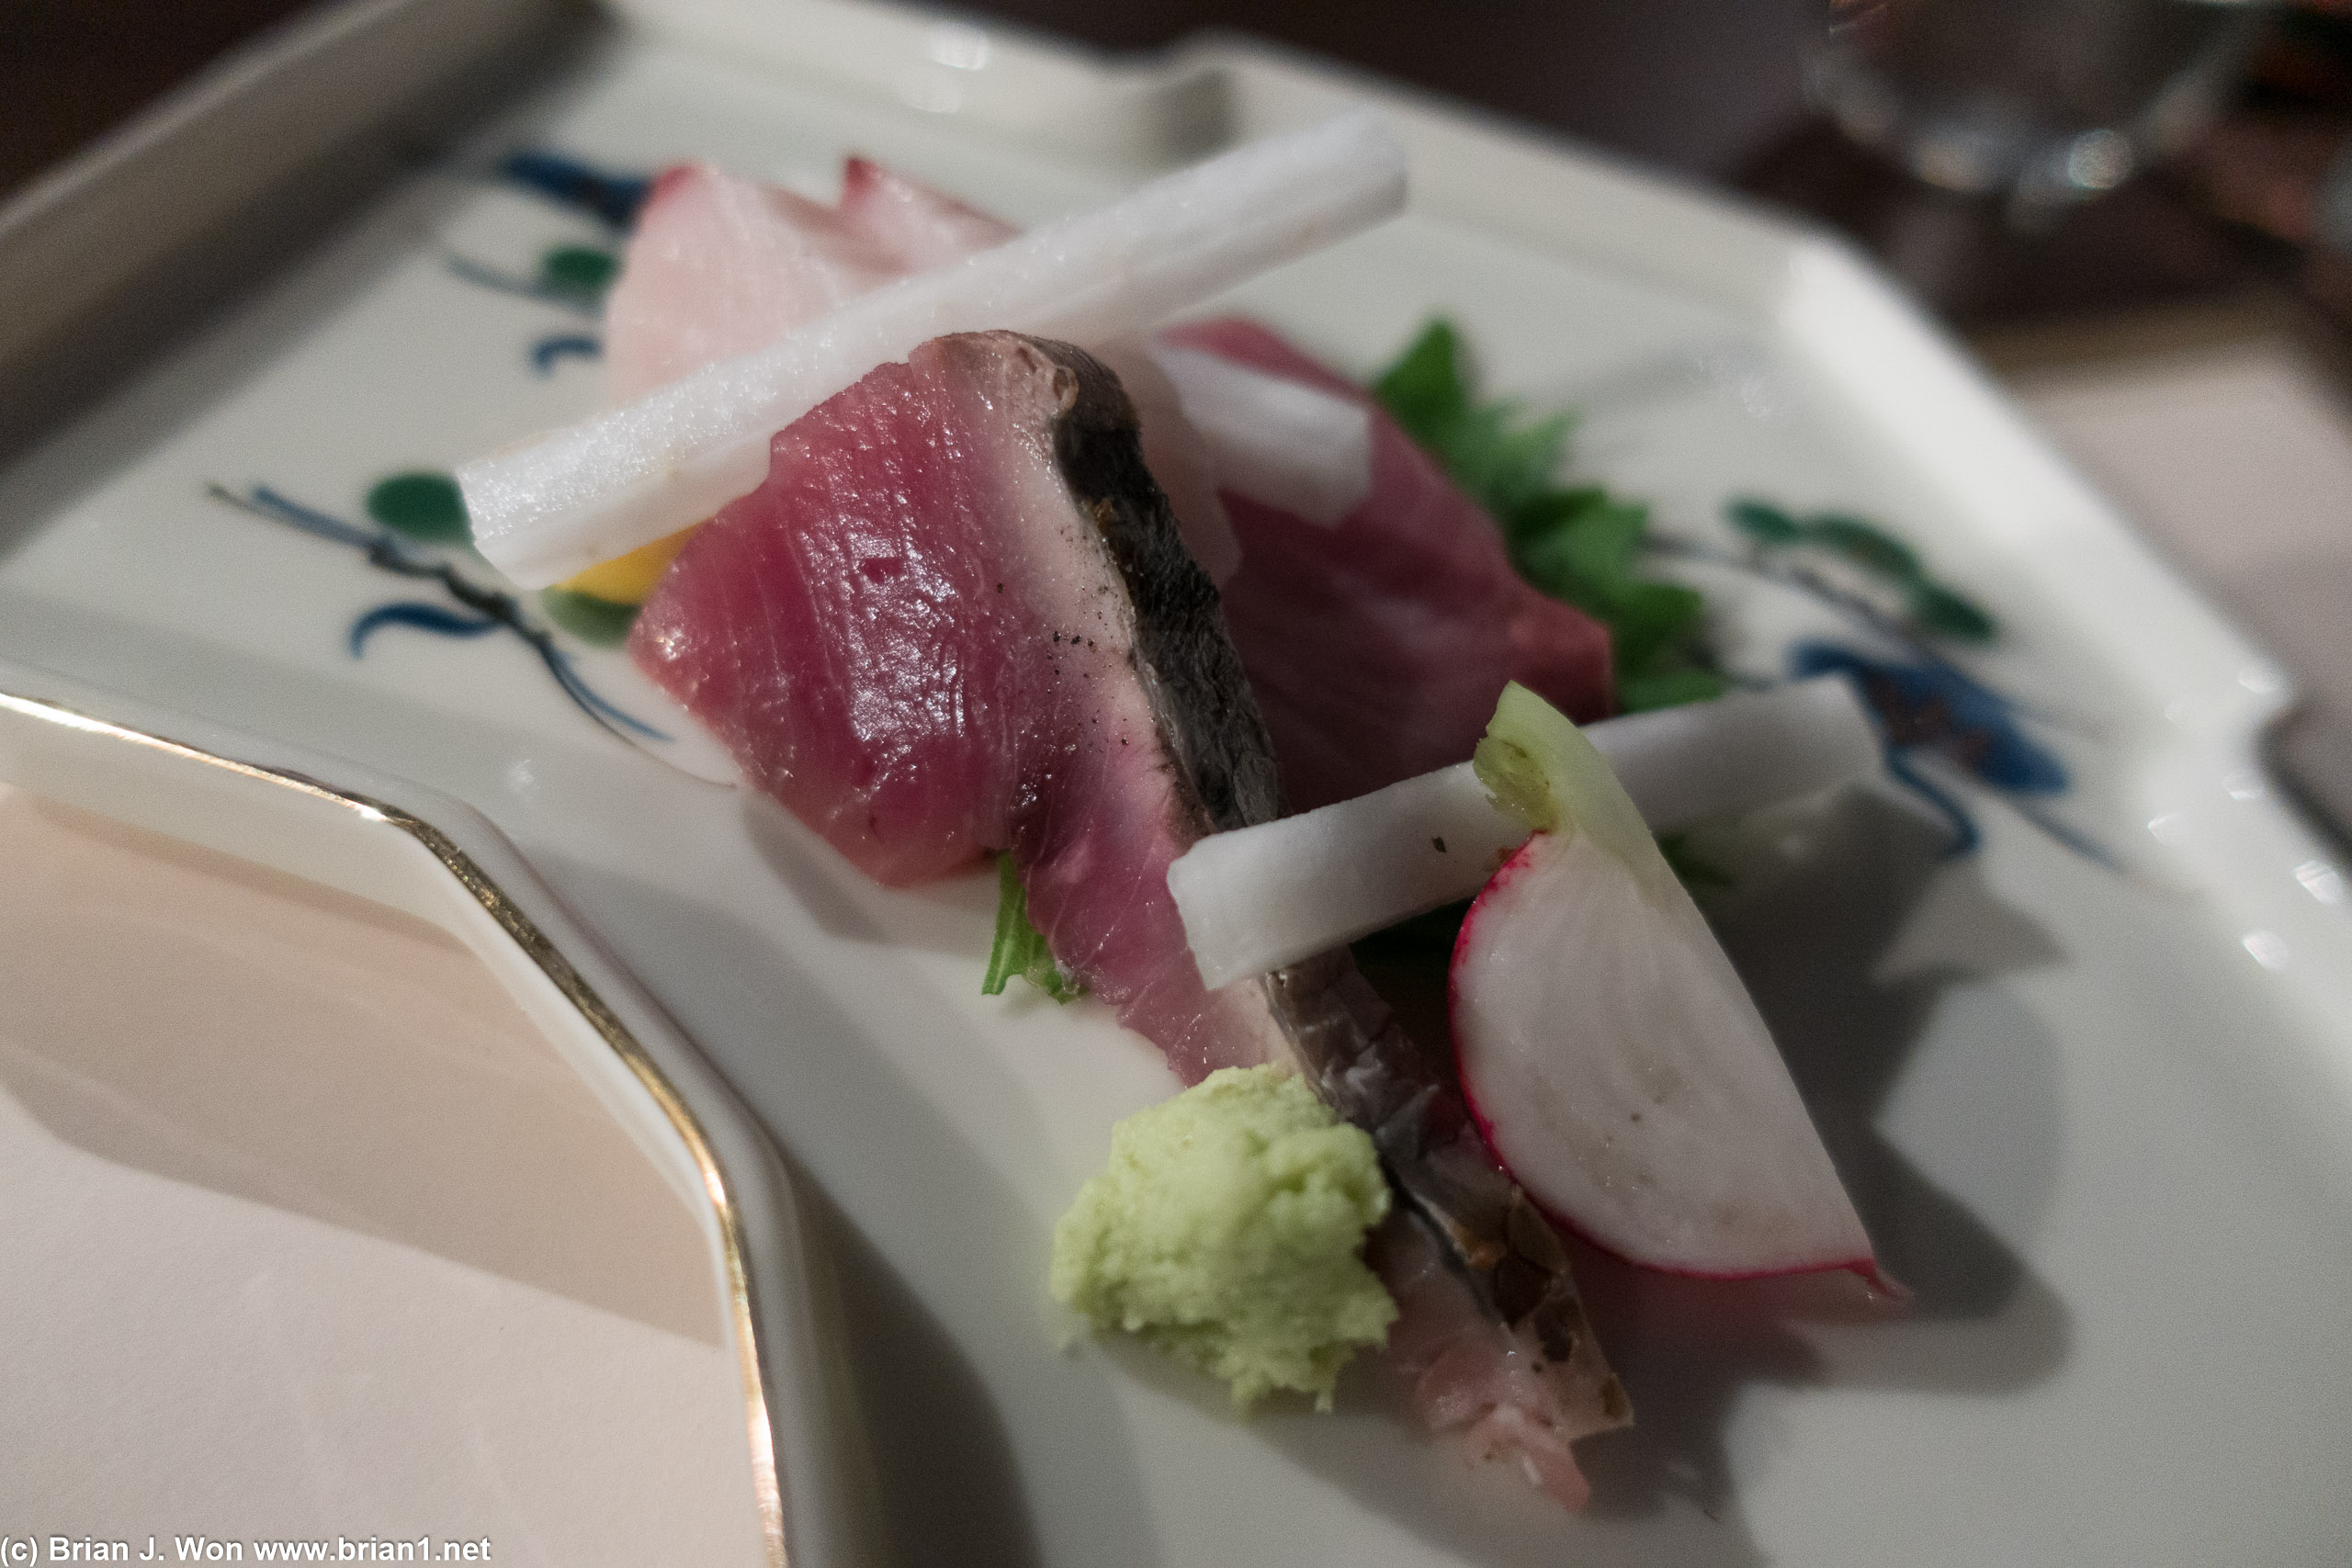 Buri, bonito, and king mackerel sashimi.